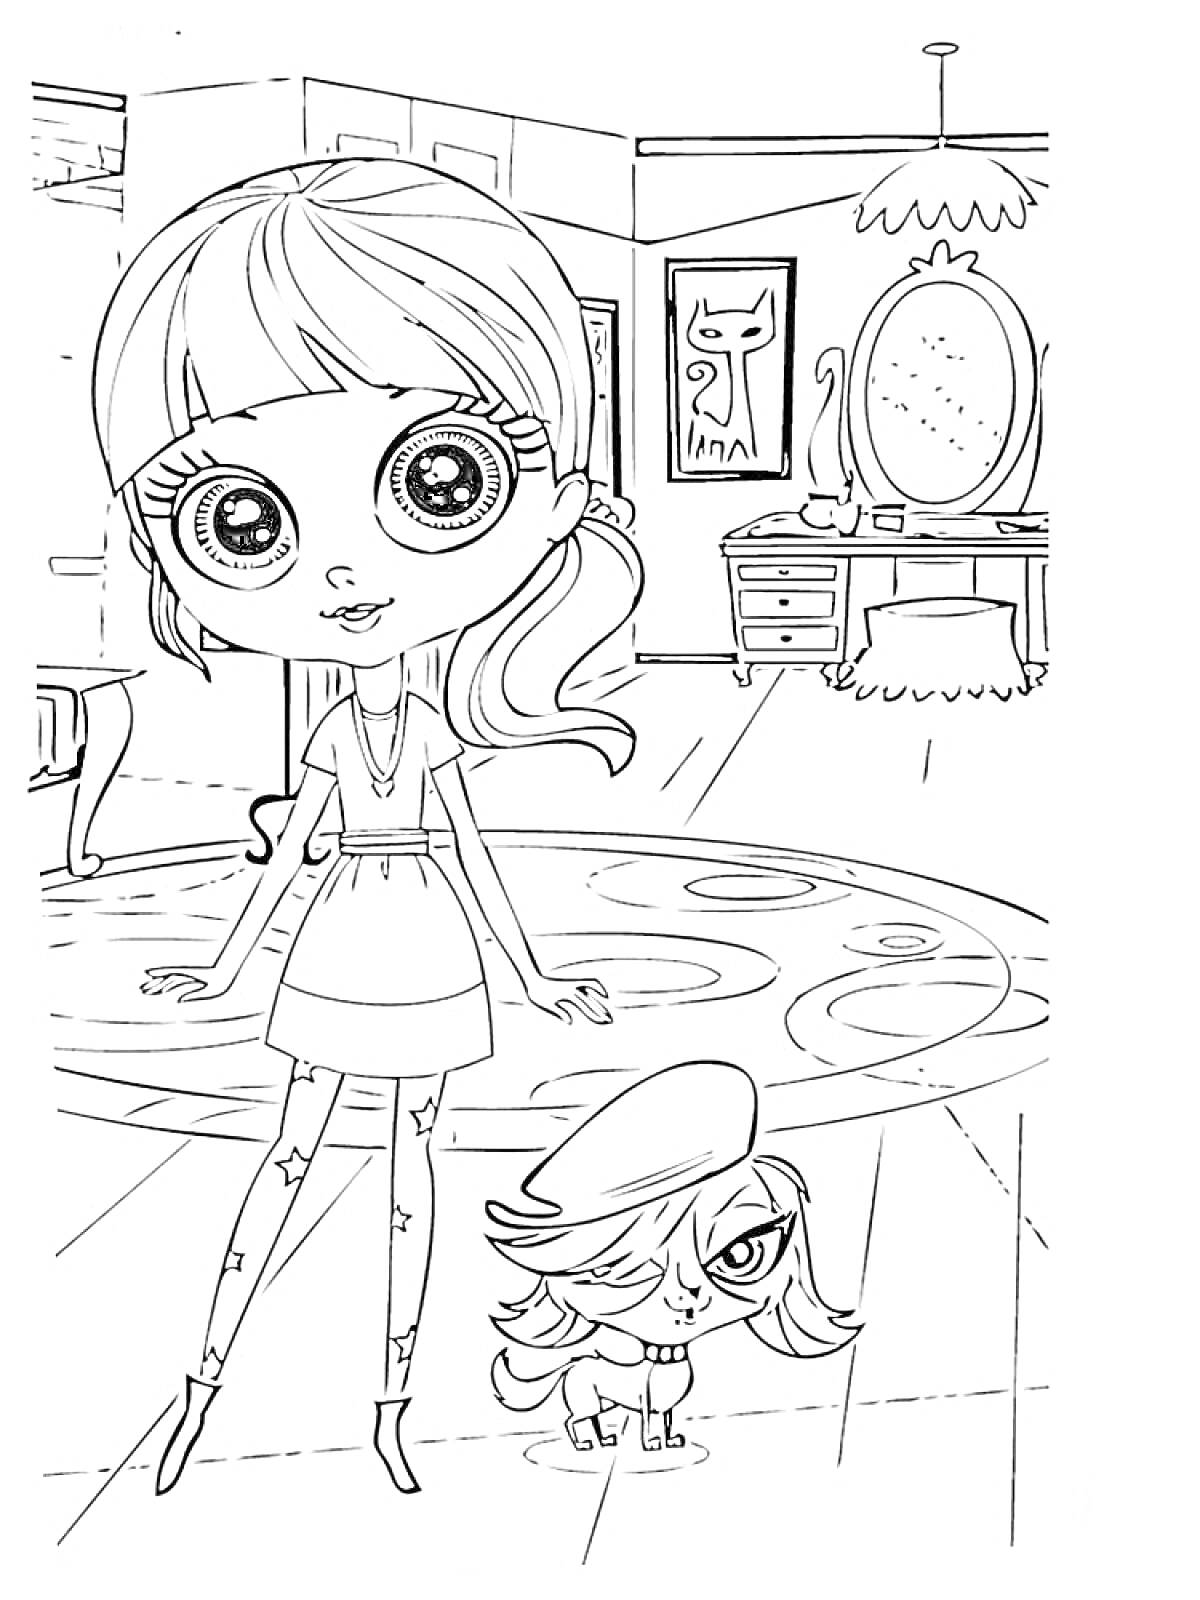 Раскраска Девочка с большими глазами и хвостиком, стоящая рядом с питомцем в комнате с зеркалом и столом